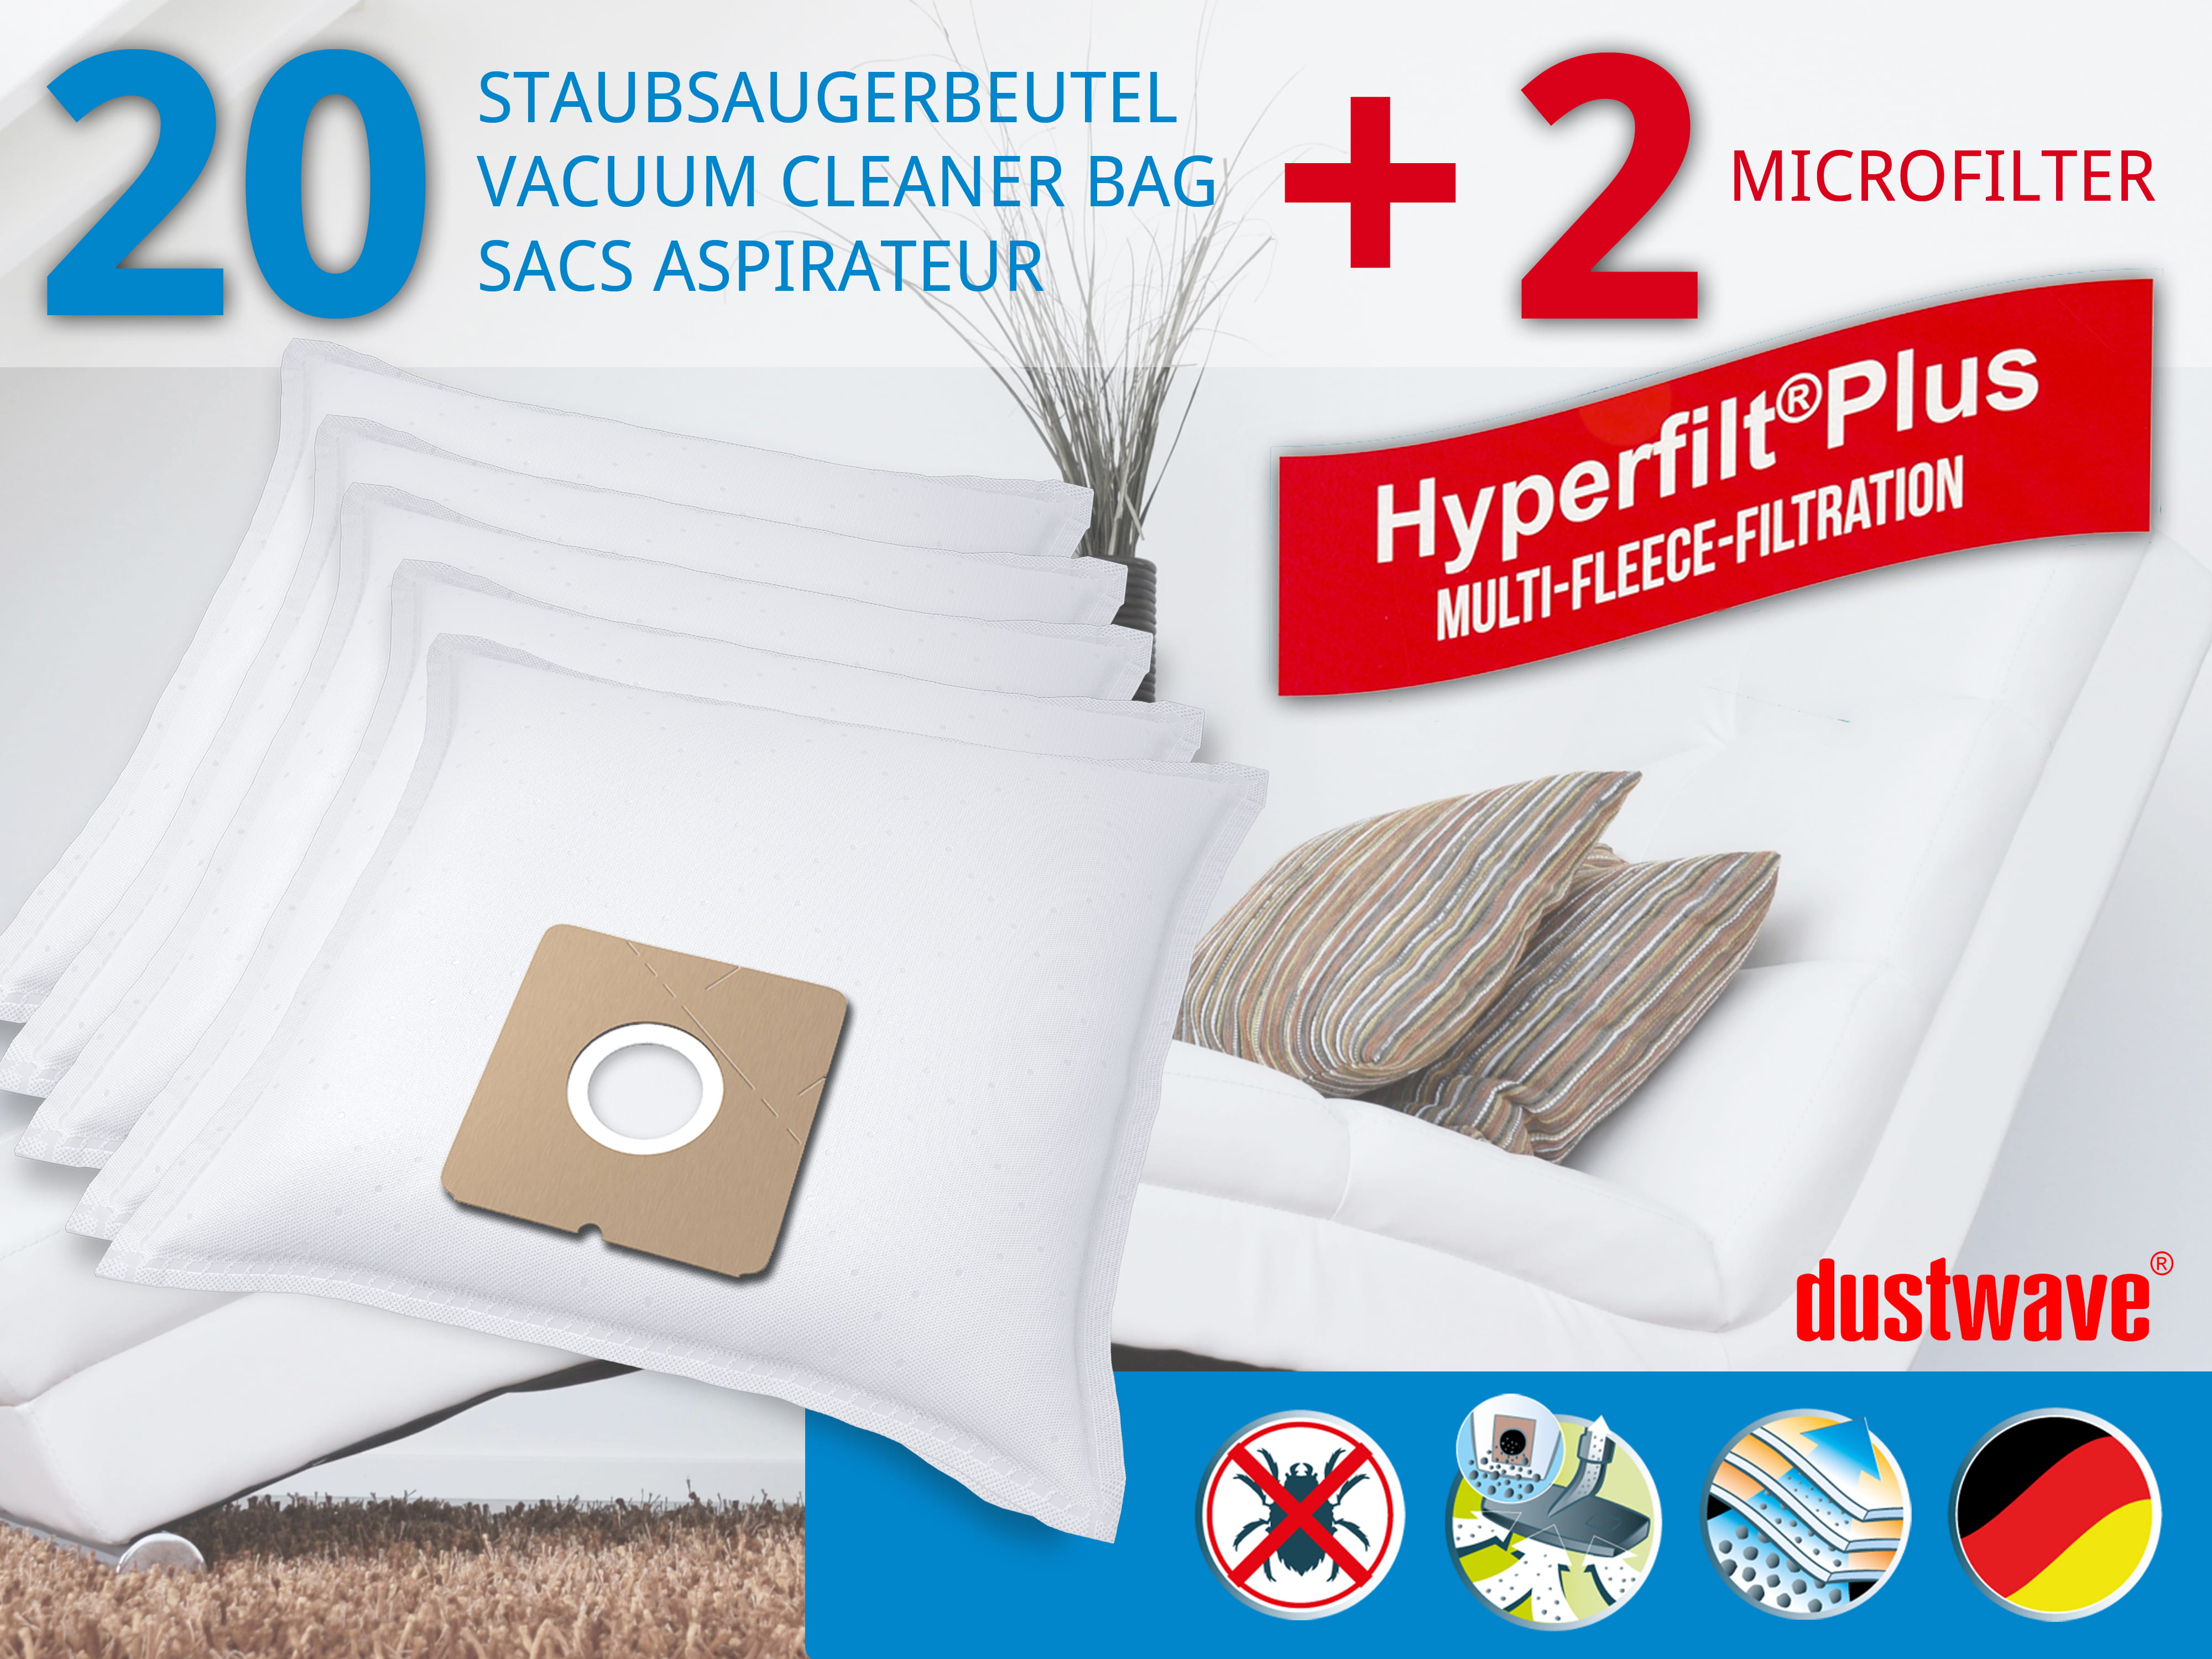 Dustwave® 20 Staubsaugerbeutel für Elekta EVC 2450 W - hocheffizient, mehrlagiges Mikrovlies mit Hygieneverschluss - Made in Germany